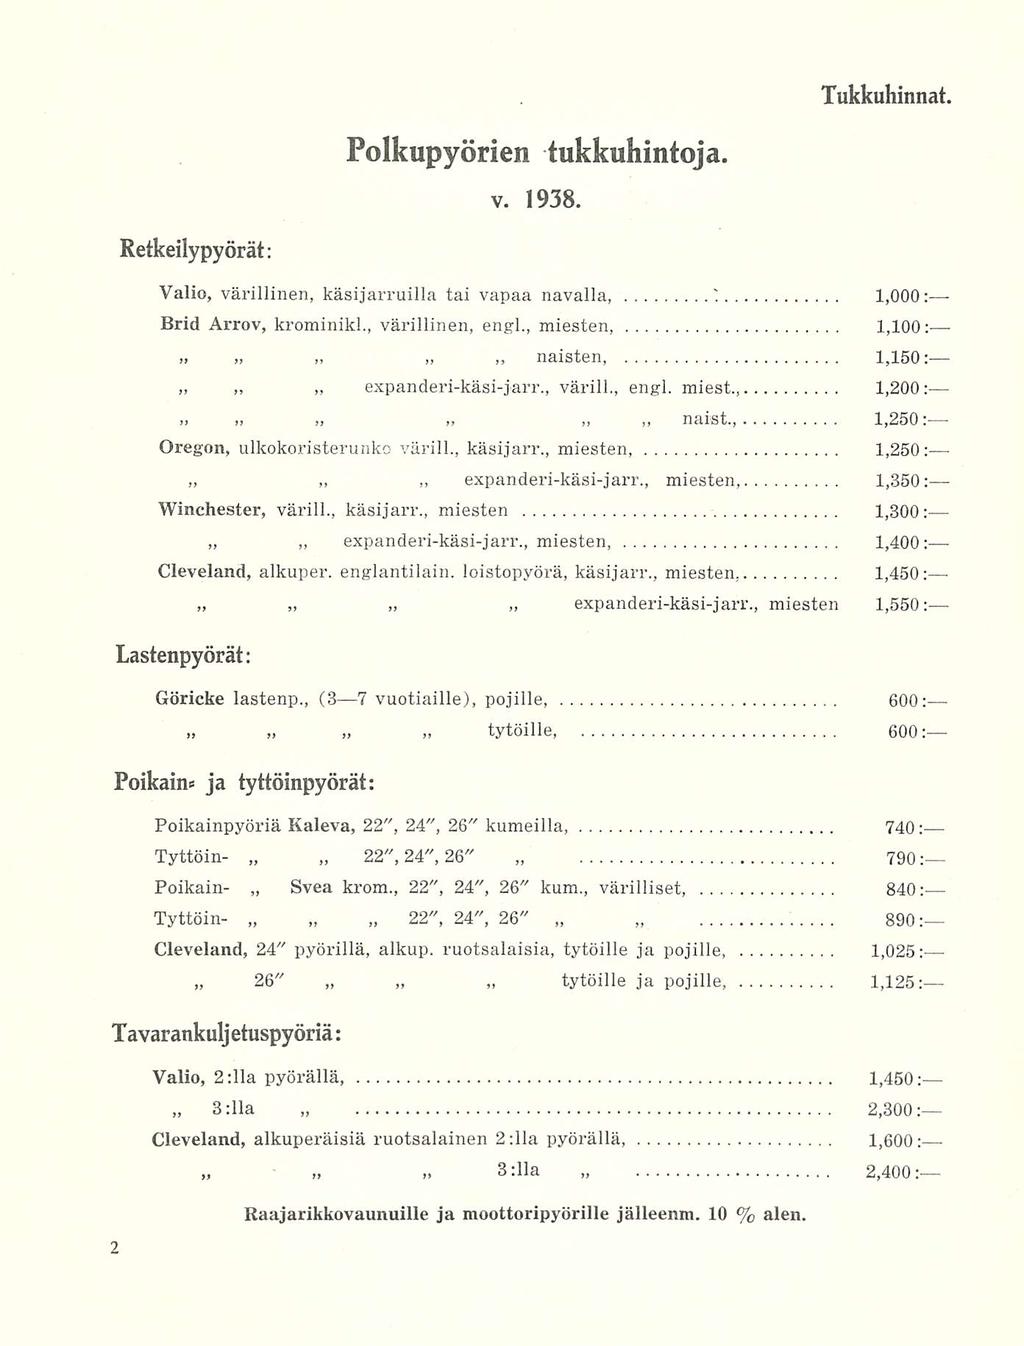 Tukkuhinnat, Retkeilypyörät: Polkupyörien tukkuhintoja. V. 1938. Valio, värillinen, käsijarruilla tai vapaa navalla, 1 1,000: Brid Arrov, krominikl., värillinen, engl.